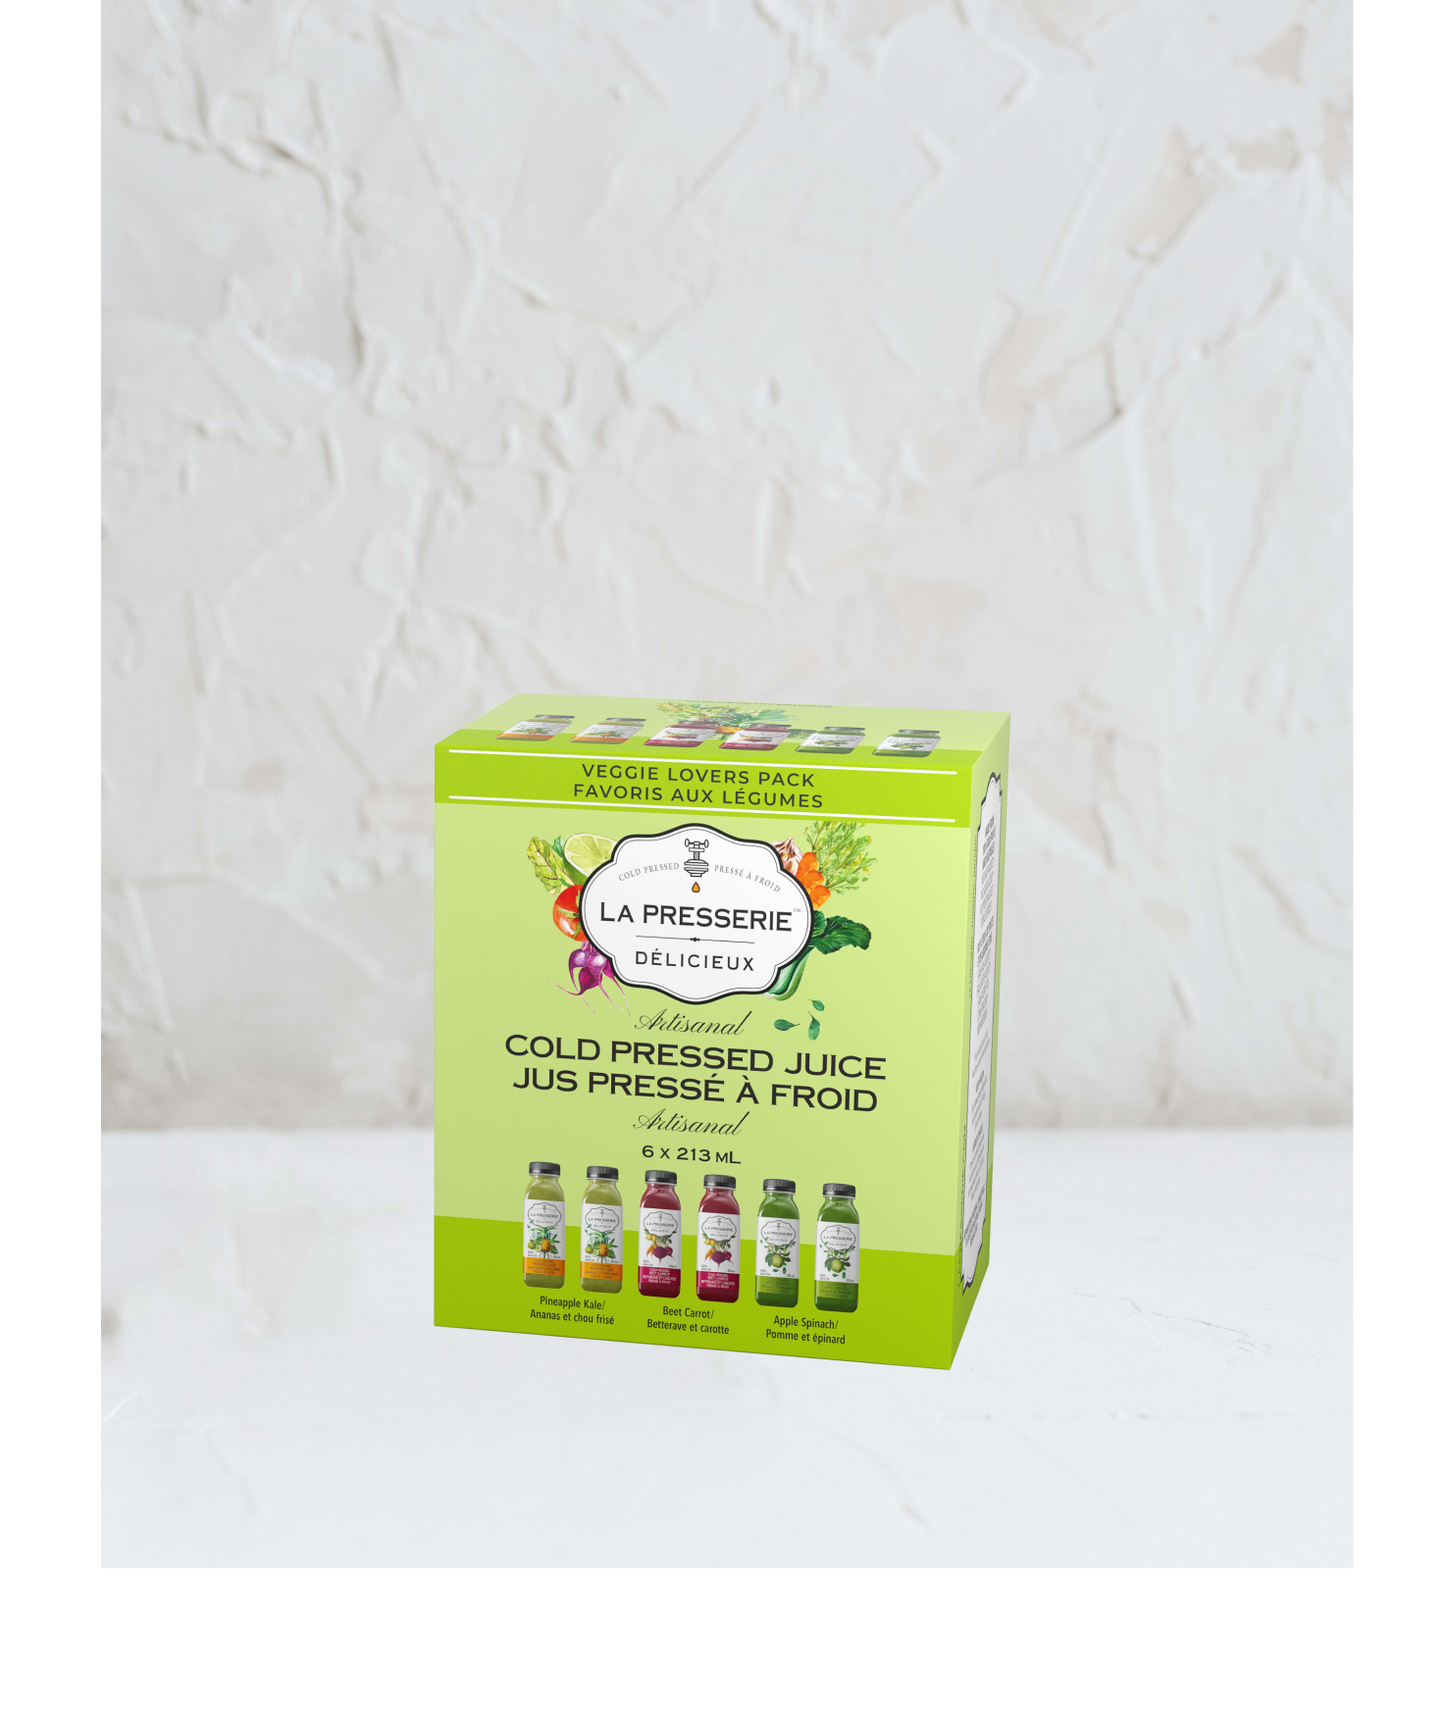 Cold Pressed Juice Veggie Lovers Pack(6x213ml)